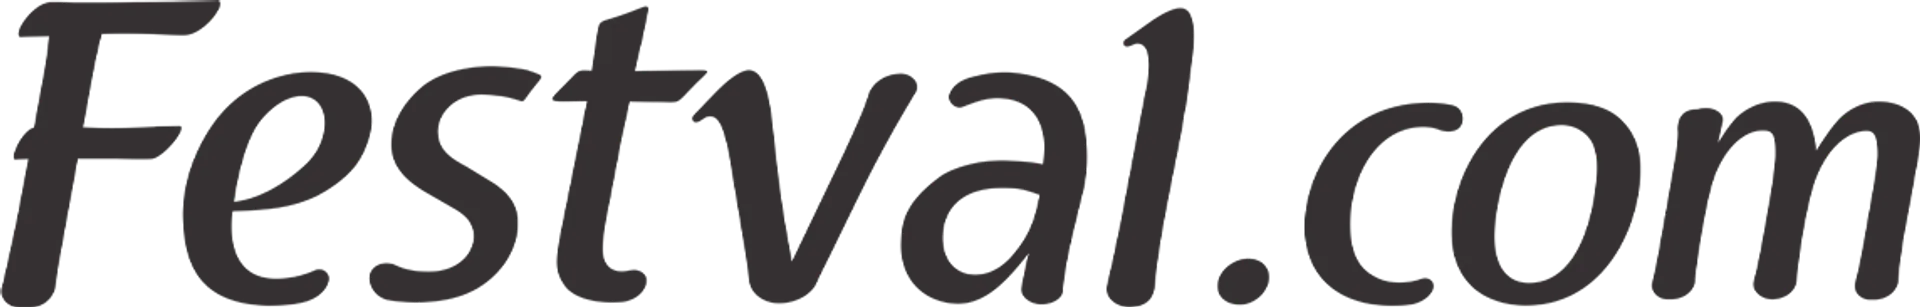 FESTVAL logo de catálogo